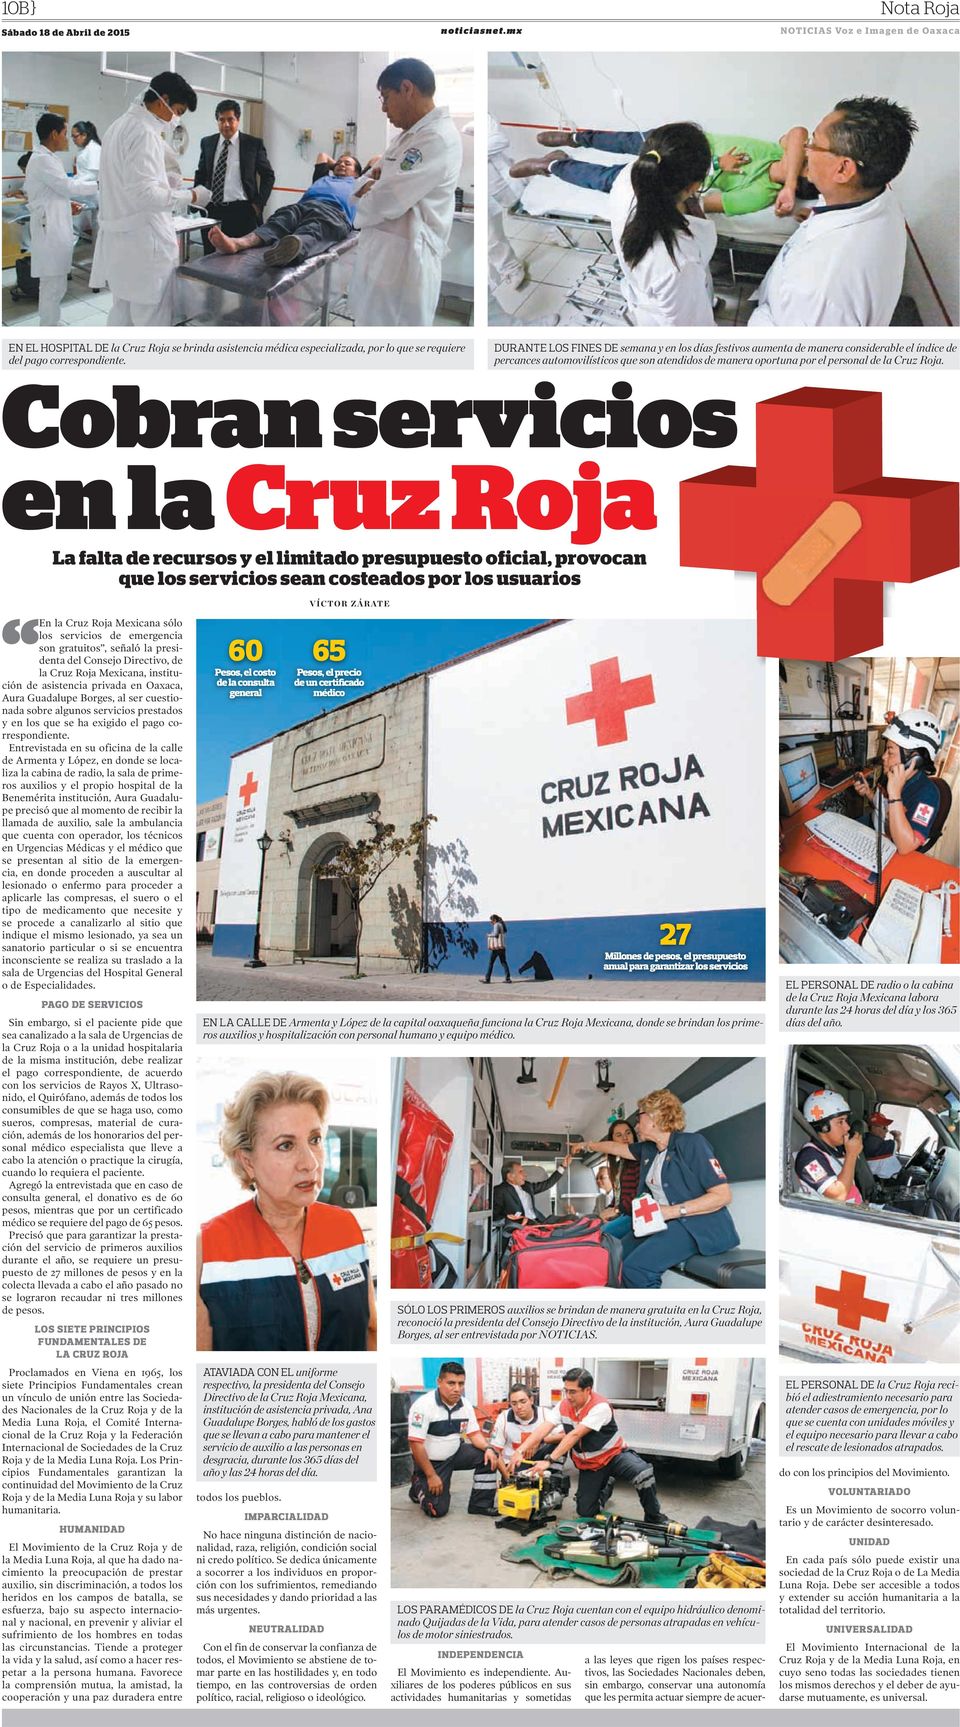 Cobran servicios en la Cruz Roja La falta de recursos y el limitado presupuesto oficial, provocan que los servicios sean costeados por los usuarios VÍCTOR ZÁRATE En la Cruz Roja Mexicana sólo los